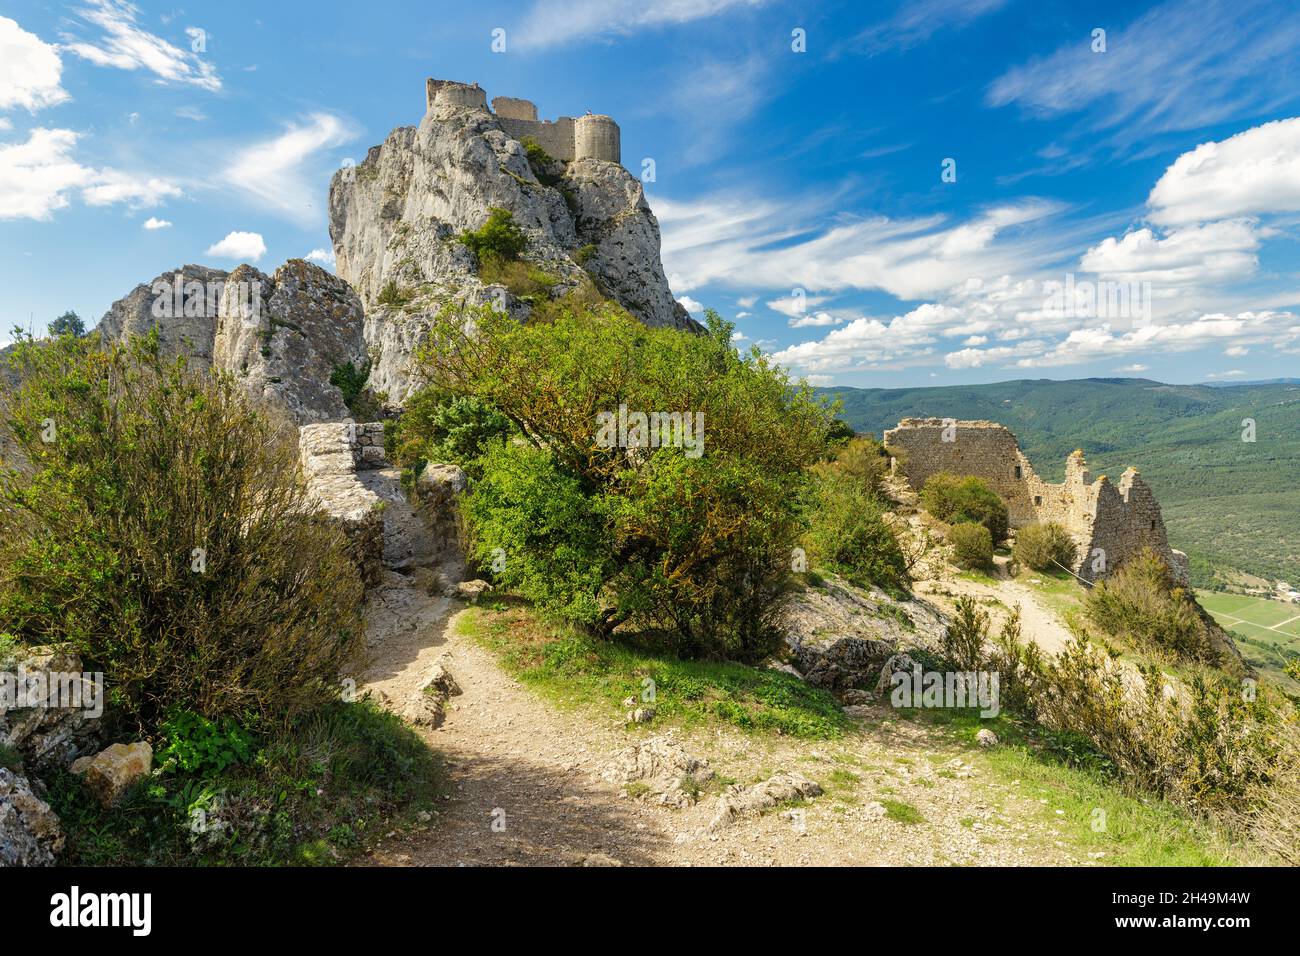 Paisaje rocoso alrededor del castillo medieval francés de Peyrepertuse en la montaña de los Pirineos. Foto de stock